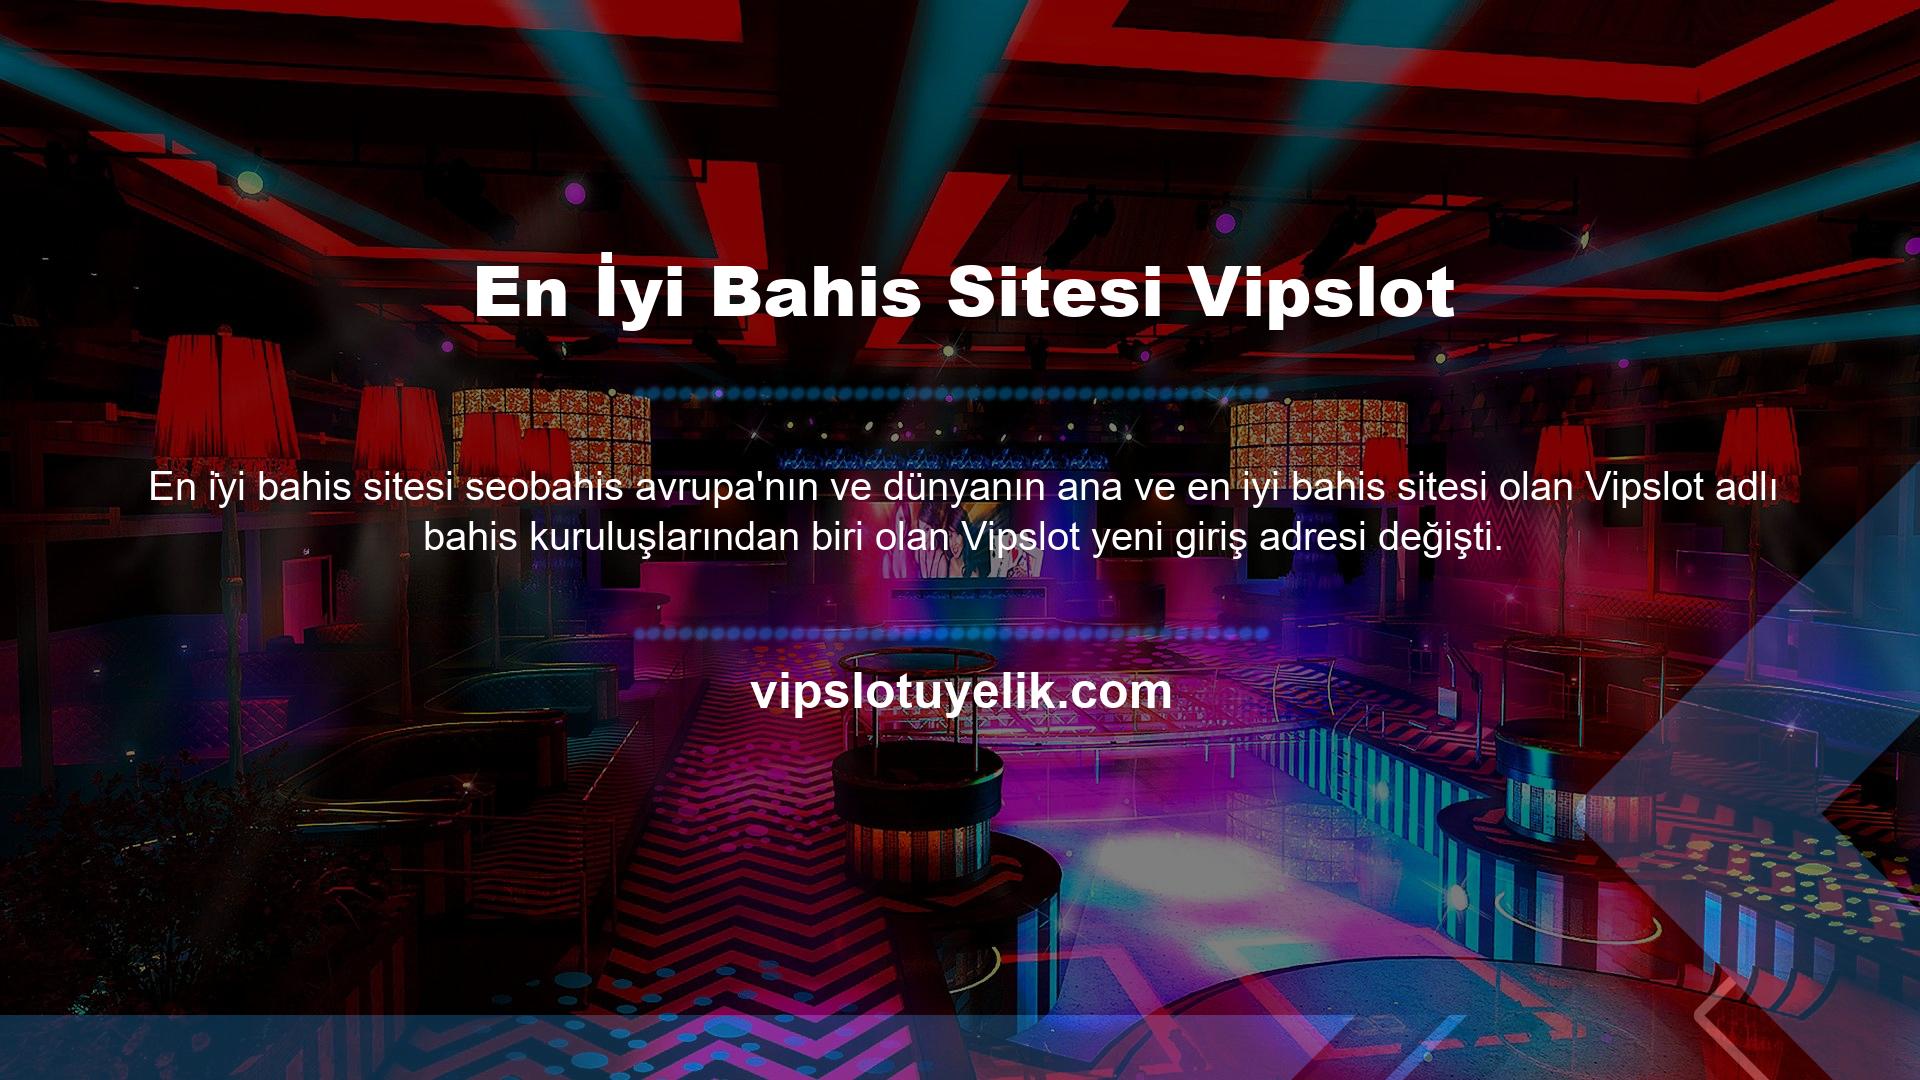 Vipslot bahis sitesi, kullanıcıların paniğe kapılmaması için sitenin yeni giriş adresini hemen güncelleyerek adını Vipslot